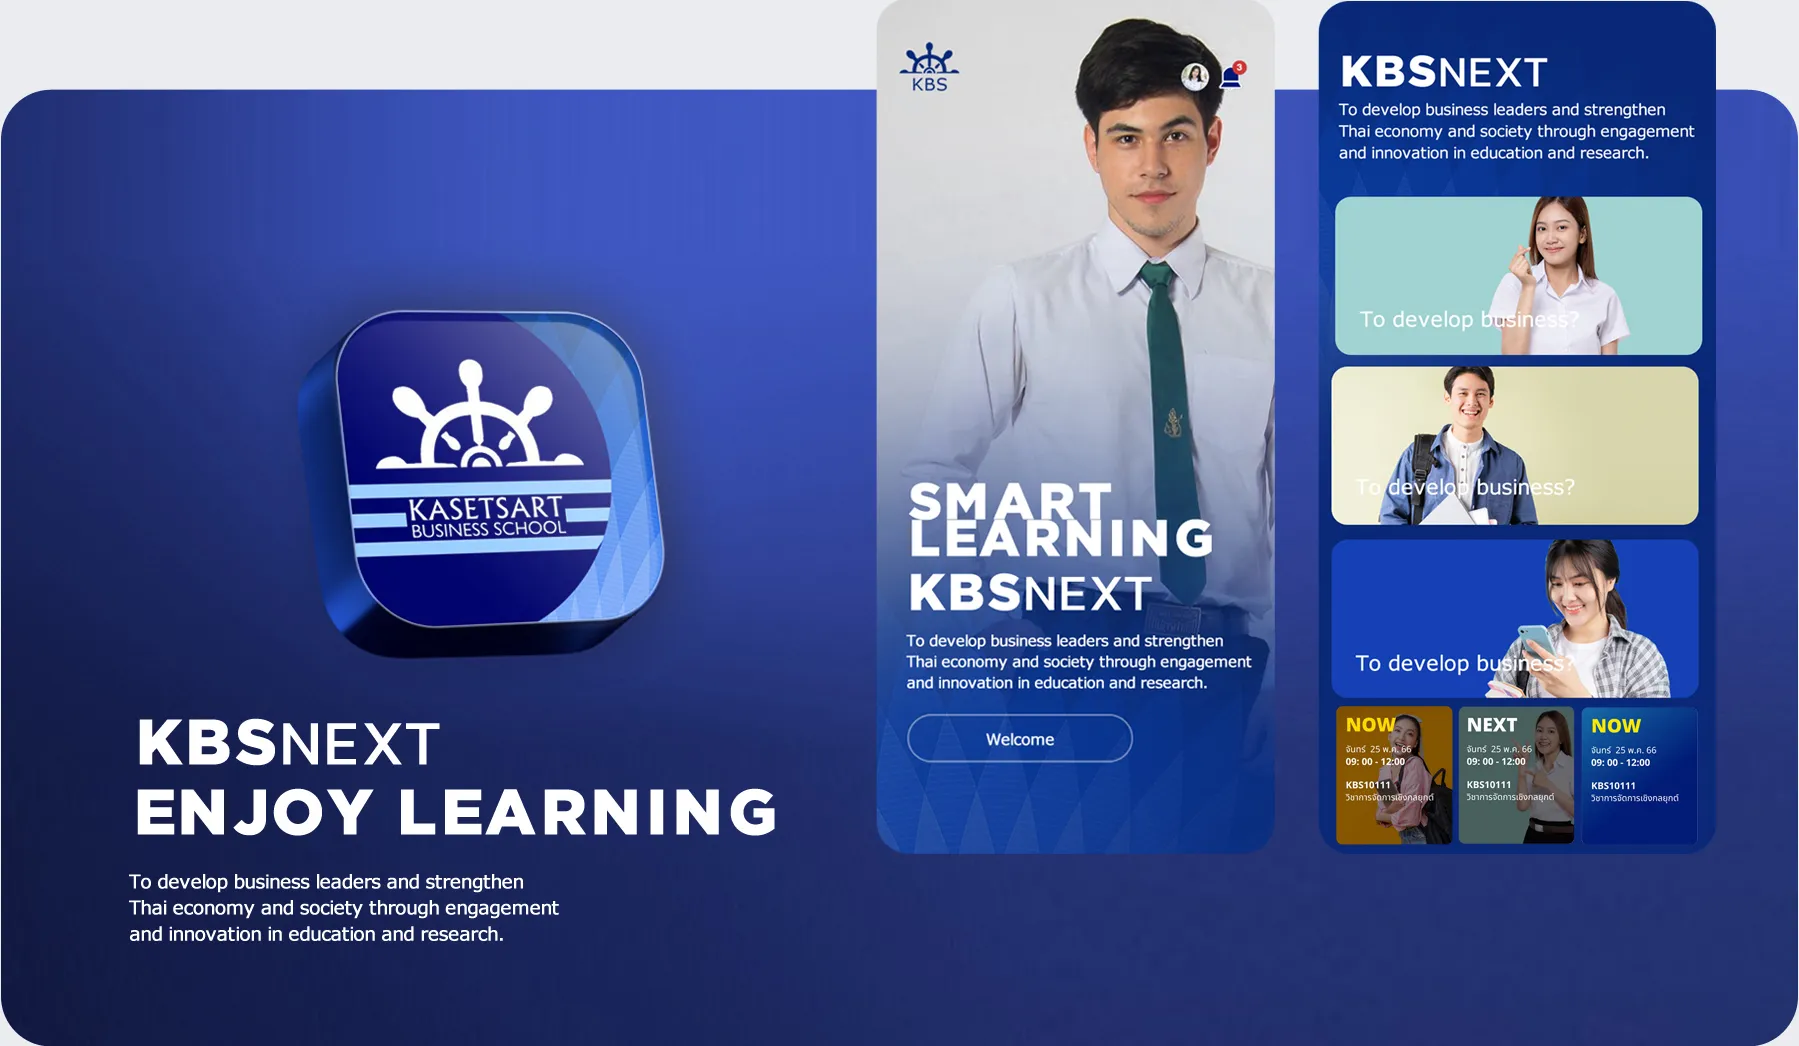 Kasetsart Business SchoolMobile Application Education